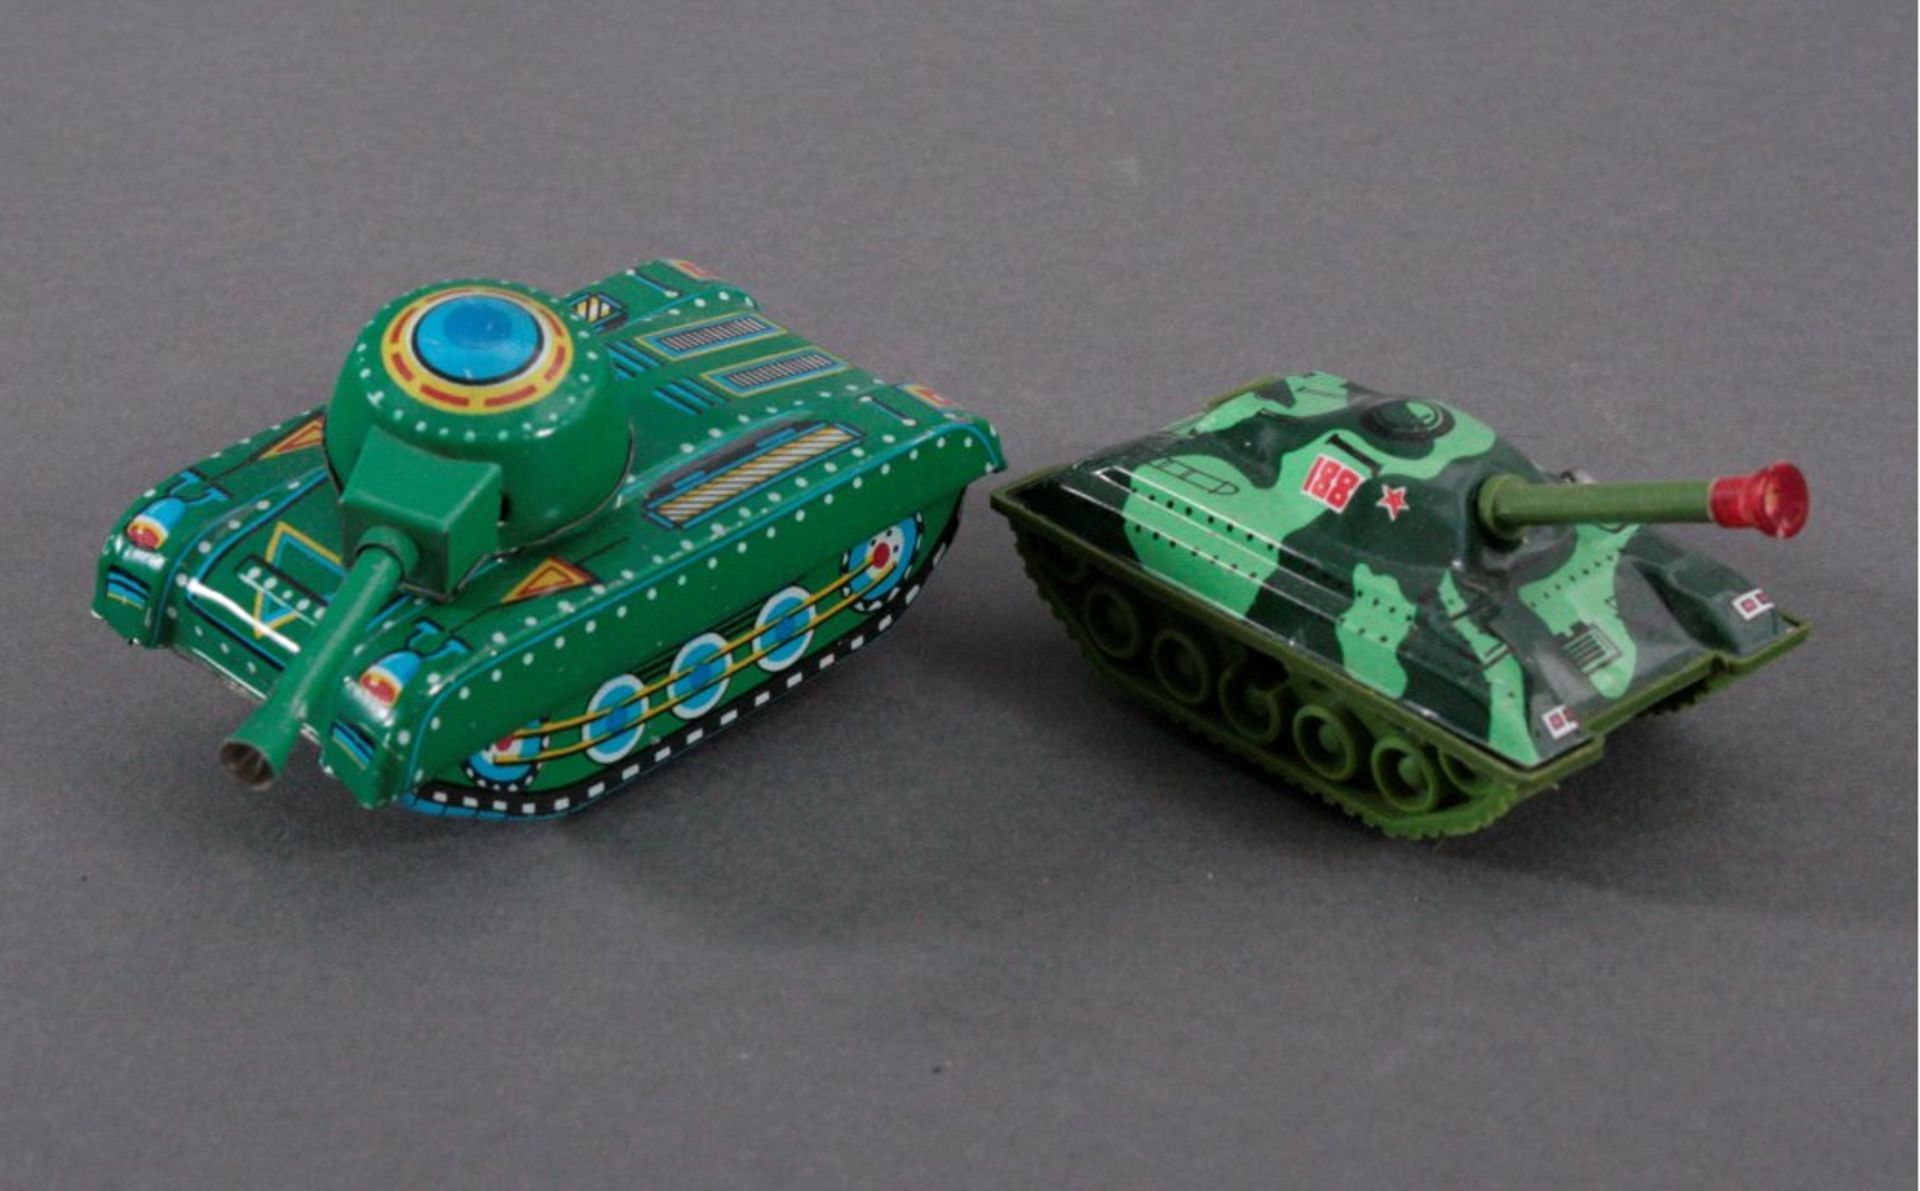 2 Panzer, Blech1x Bez. MF 074, Made in China, ca. L-12 cm.1x Uhrwerksantrieb, ohne Herstellerbez.,